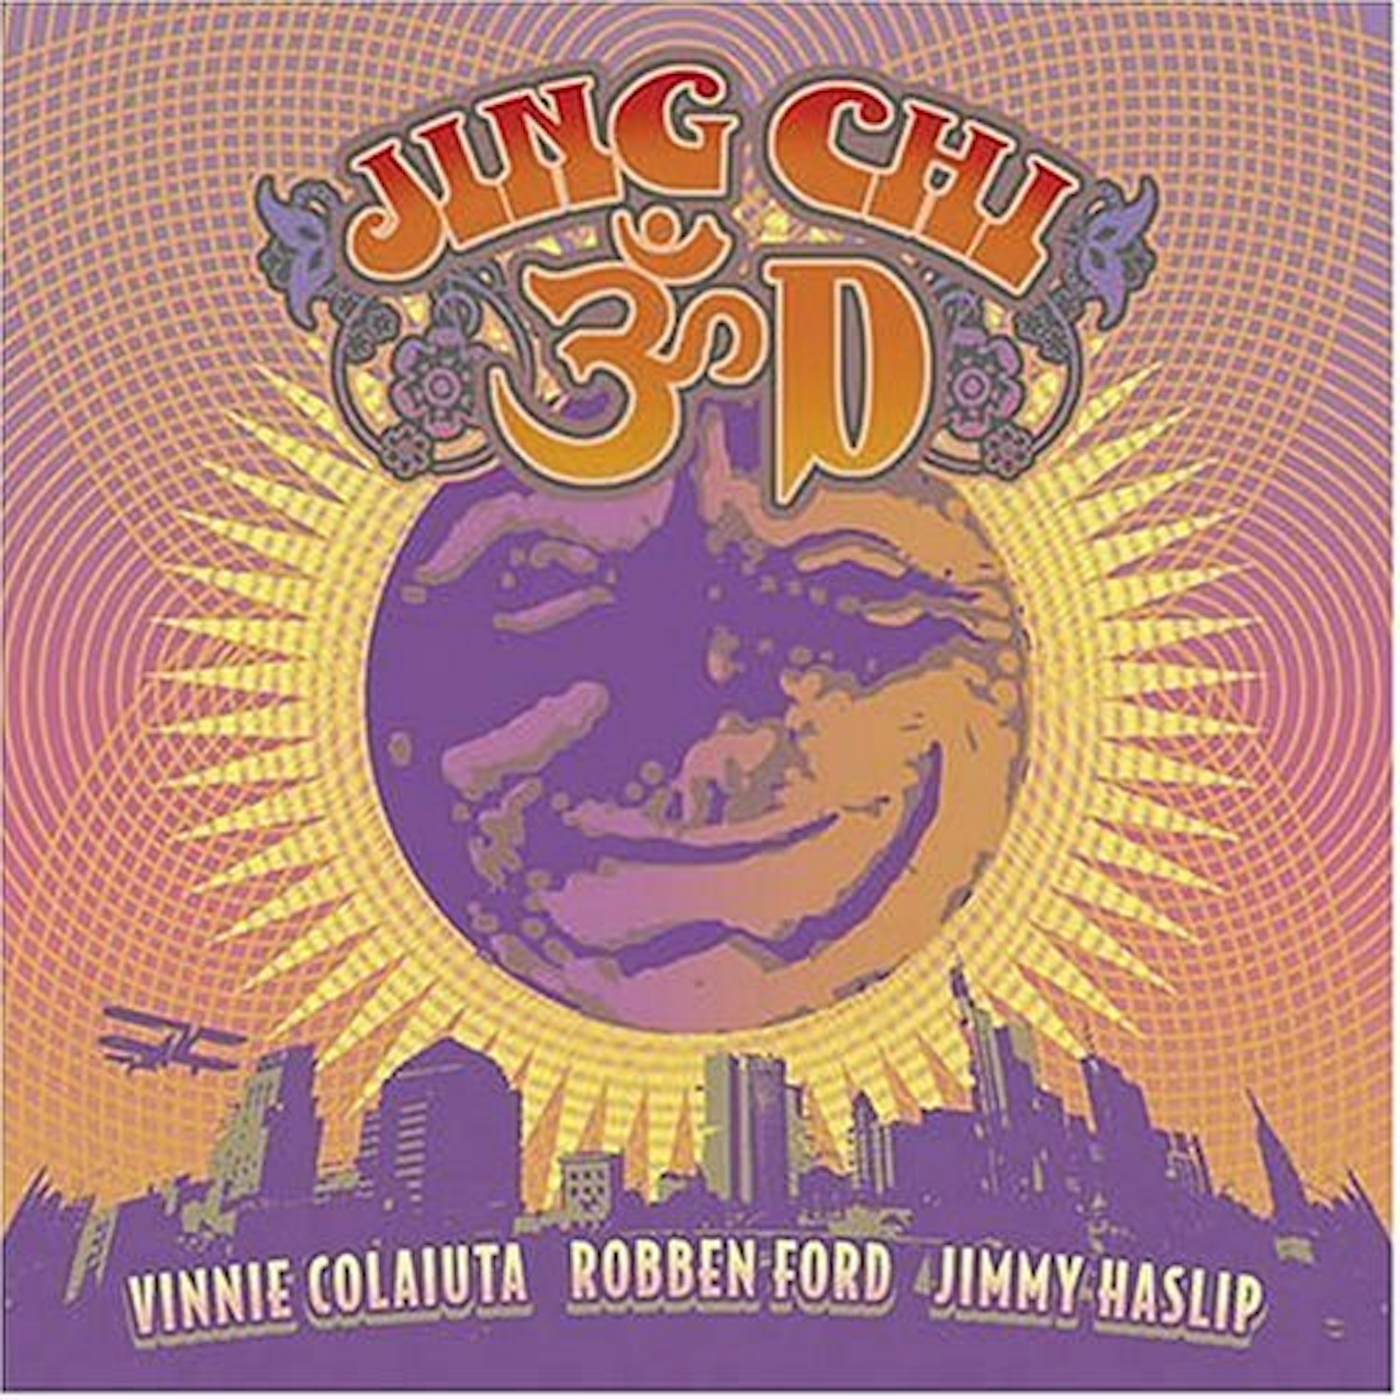 Jing Chi 3D CD